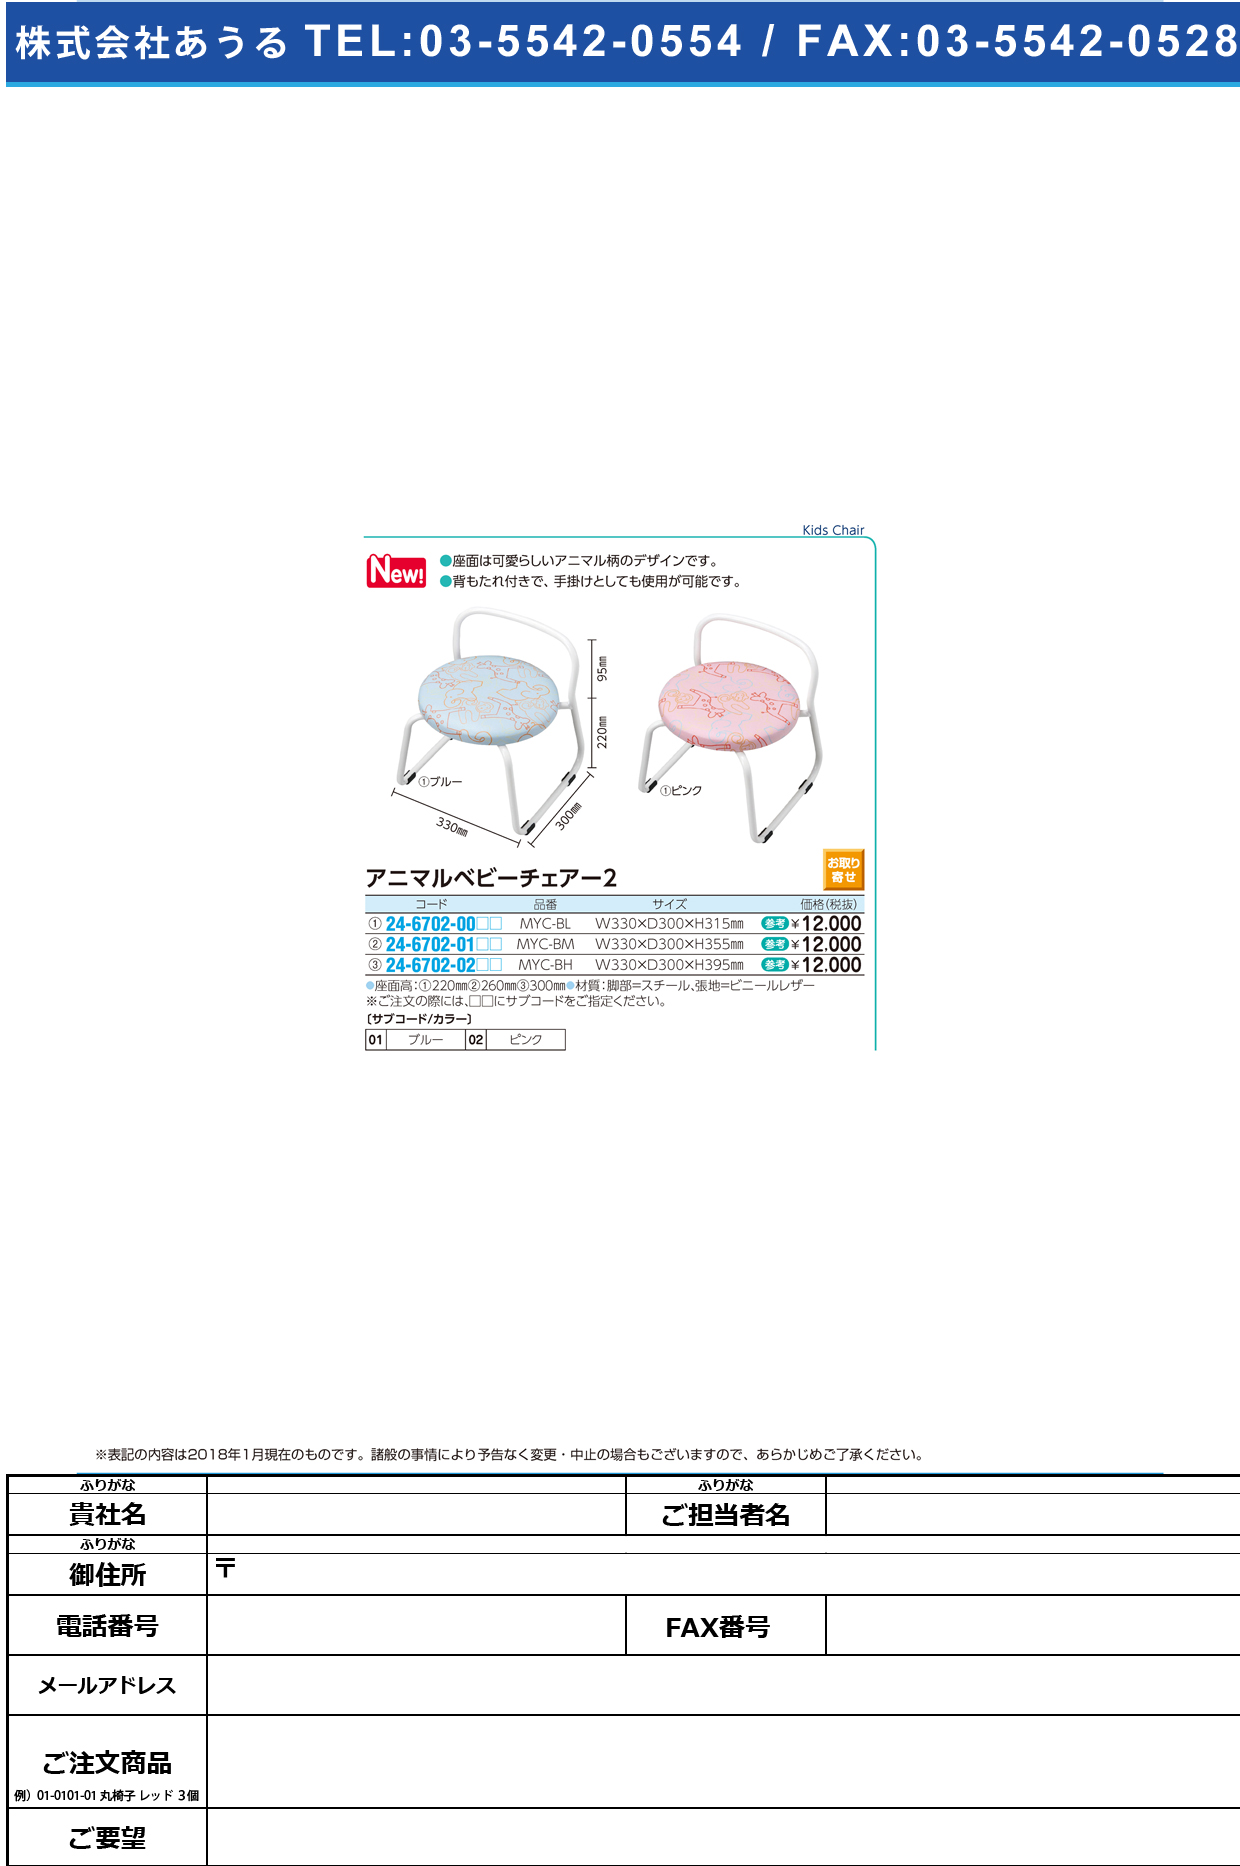 (24-6702-02)アニマルベビーチェア MYC-BH(33X30X39.5CM) ｱﾆﾏﾙﾍﾞﾋﾞｰﾁｪｱ2 ピンク【1台単位】【2018年カタログ商品】